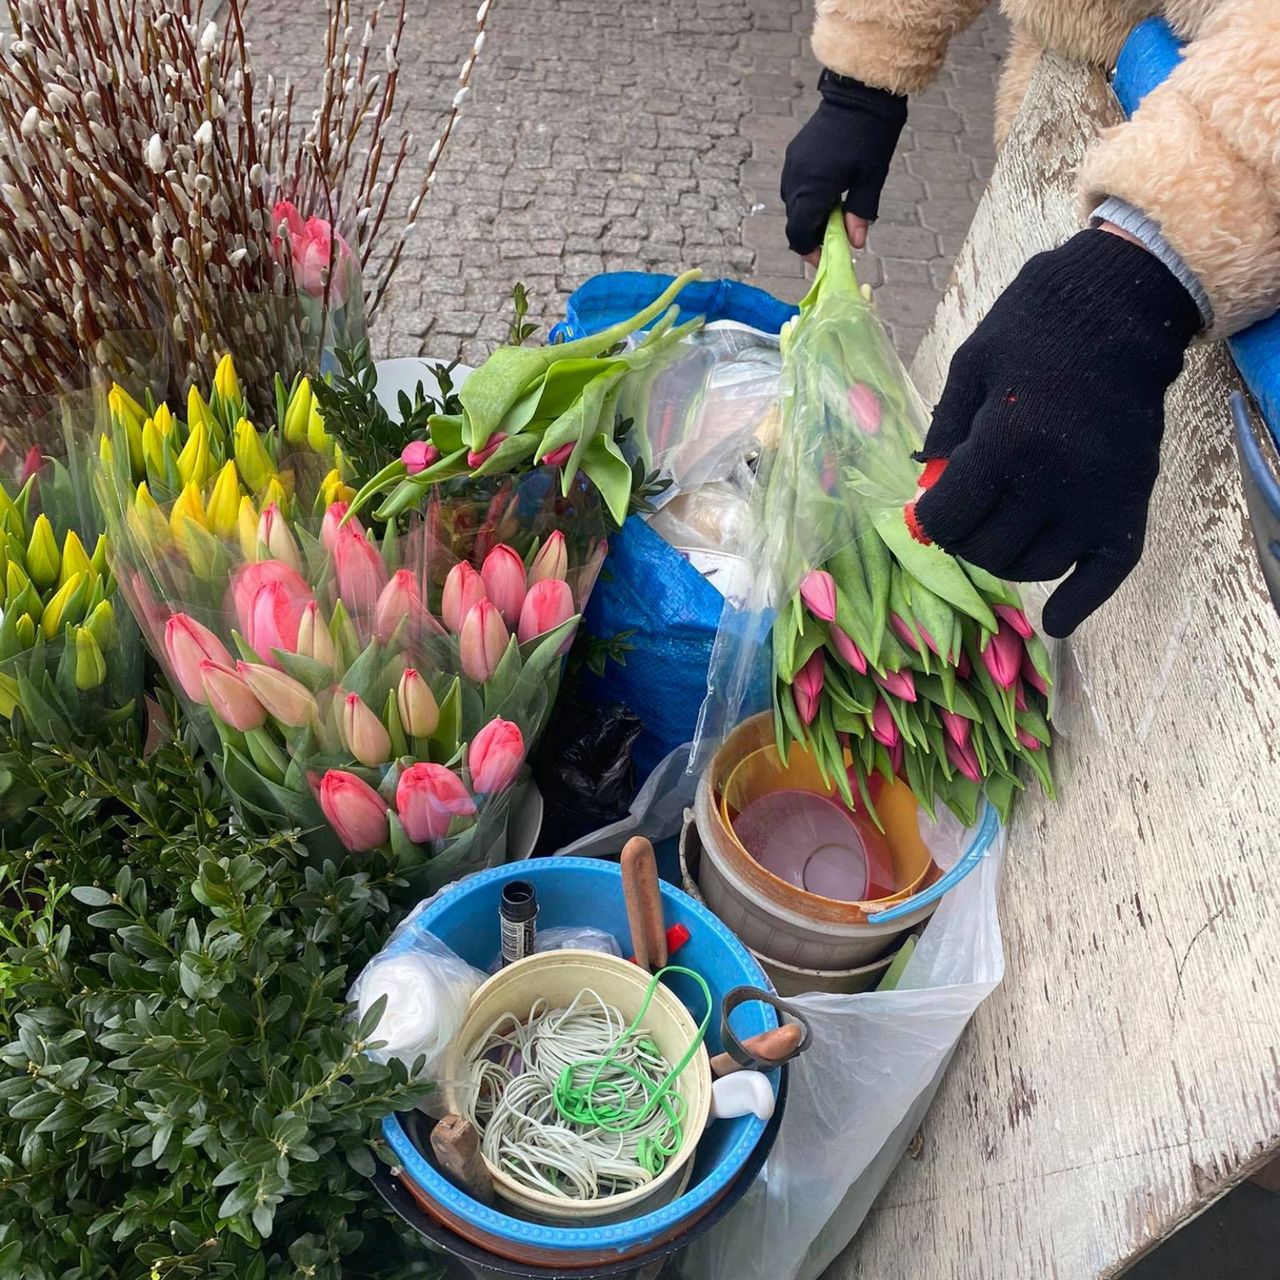 74-latka handluje kwiatami, bo musi dorabiać do emerytury